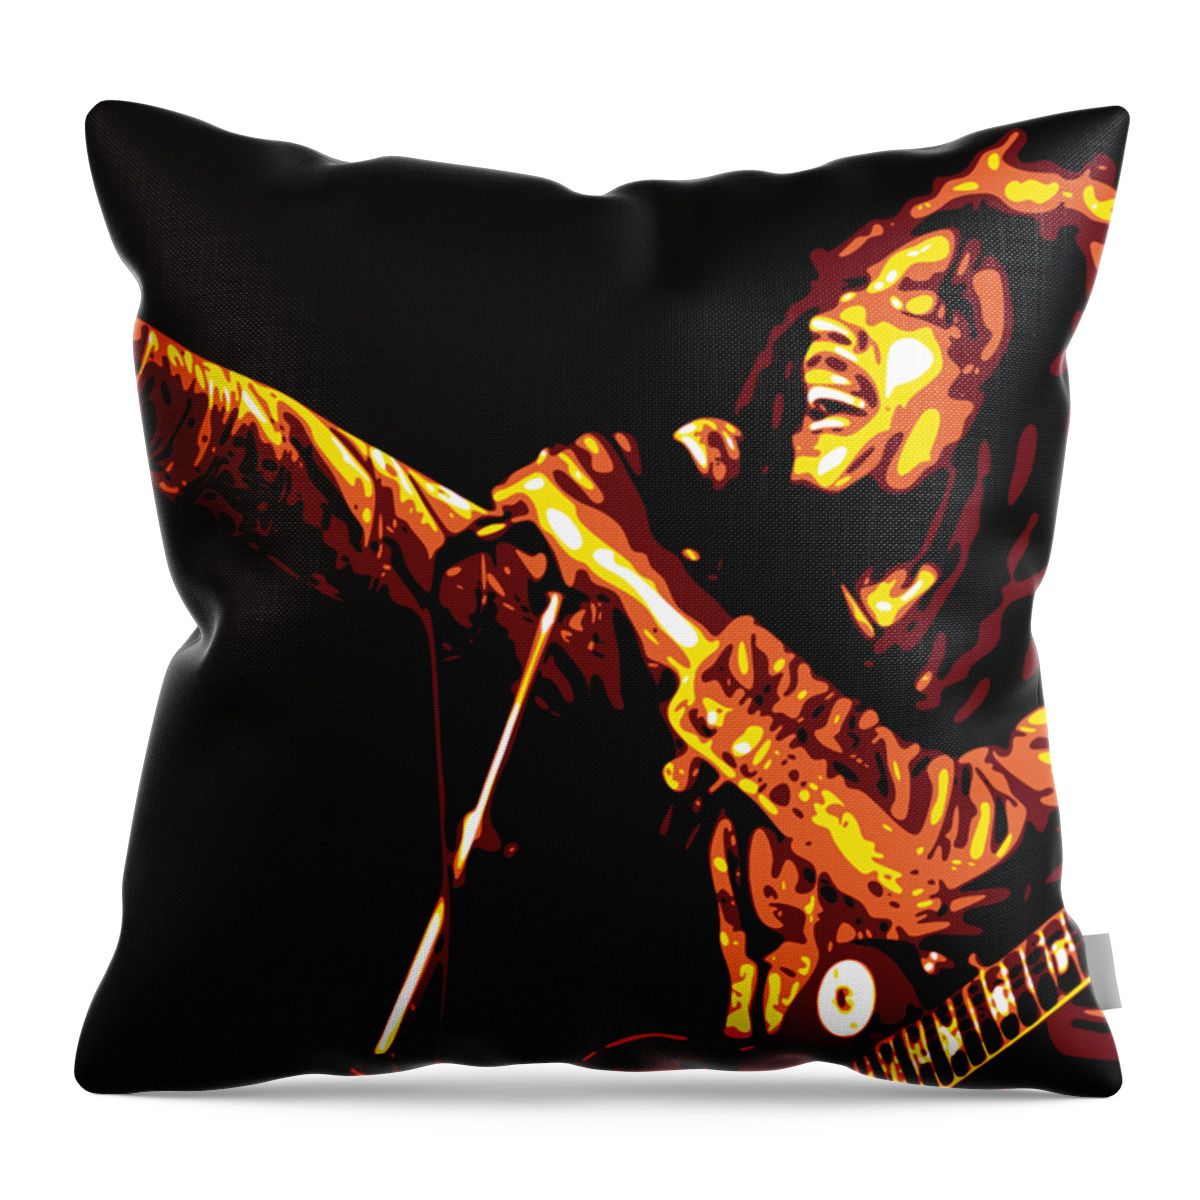 Bob Marley Throw Pillow featuring the digital art Bob Marley by DB Artist